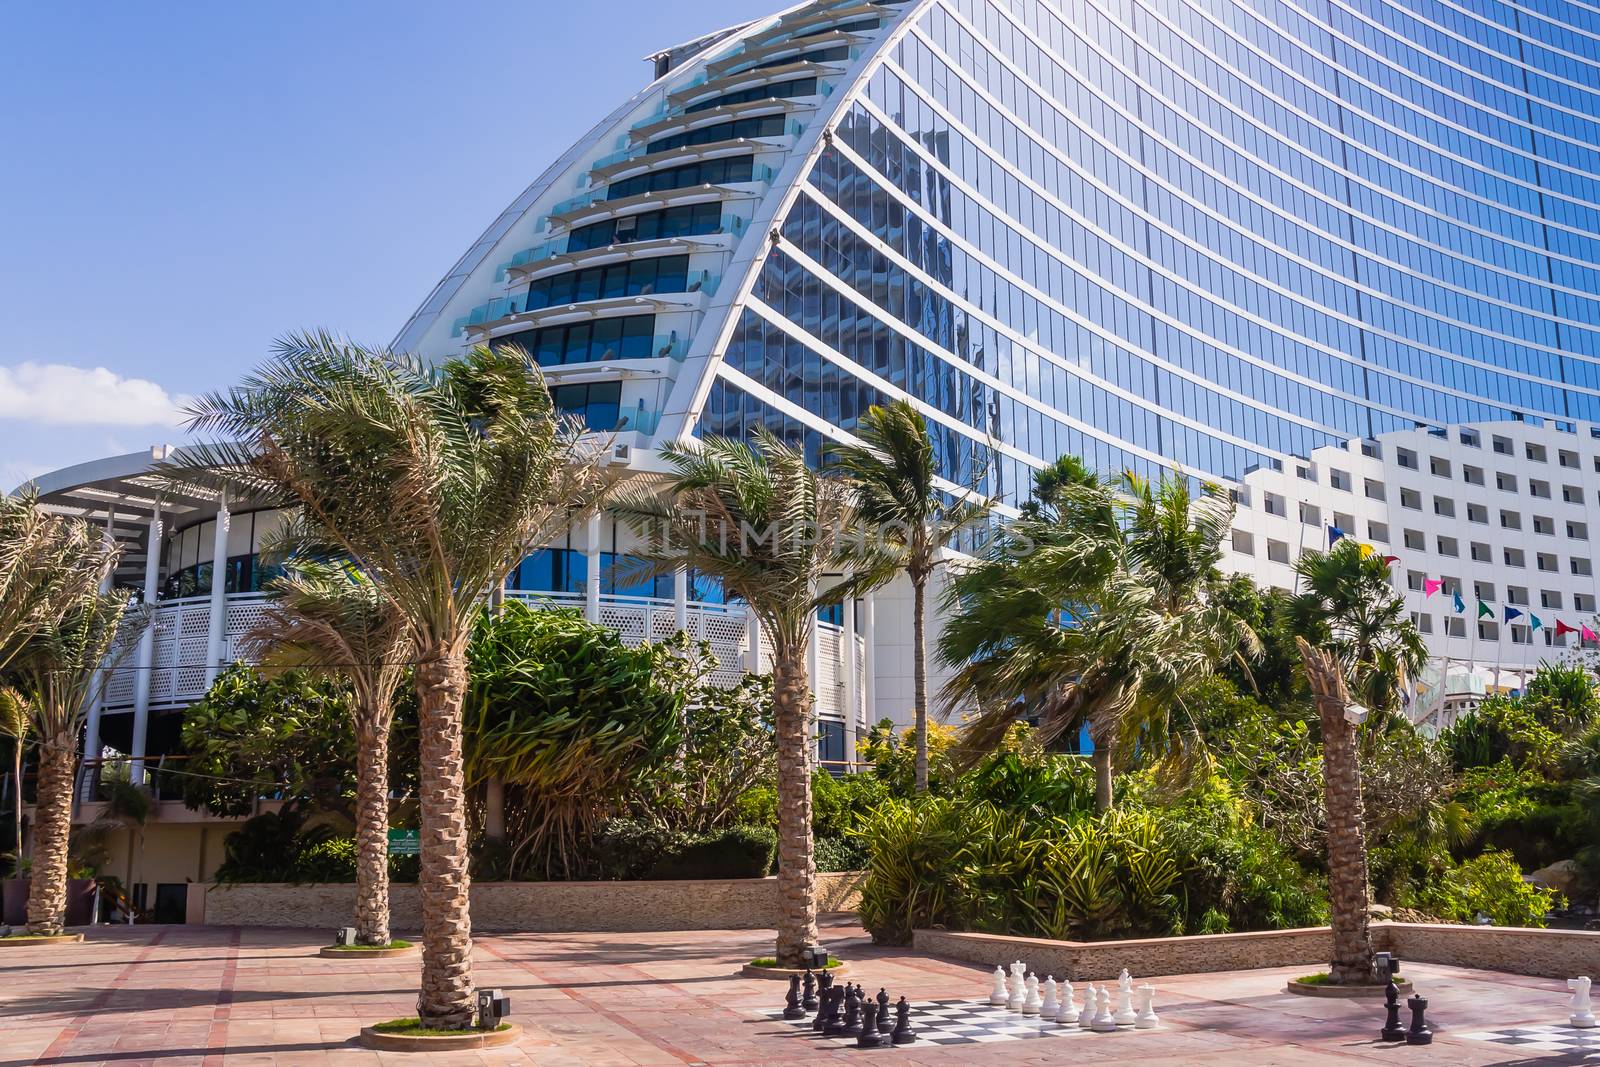 Jumeirah Beach Hotel by pawel_szczepanski